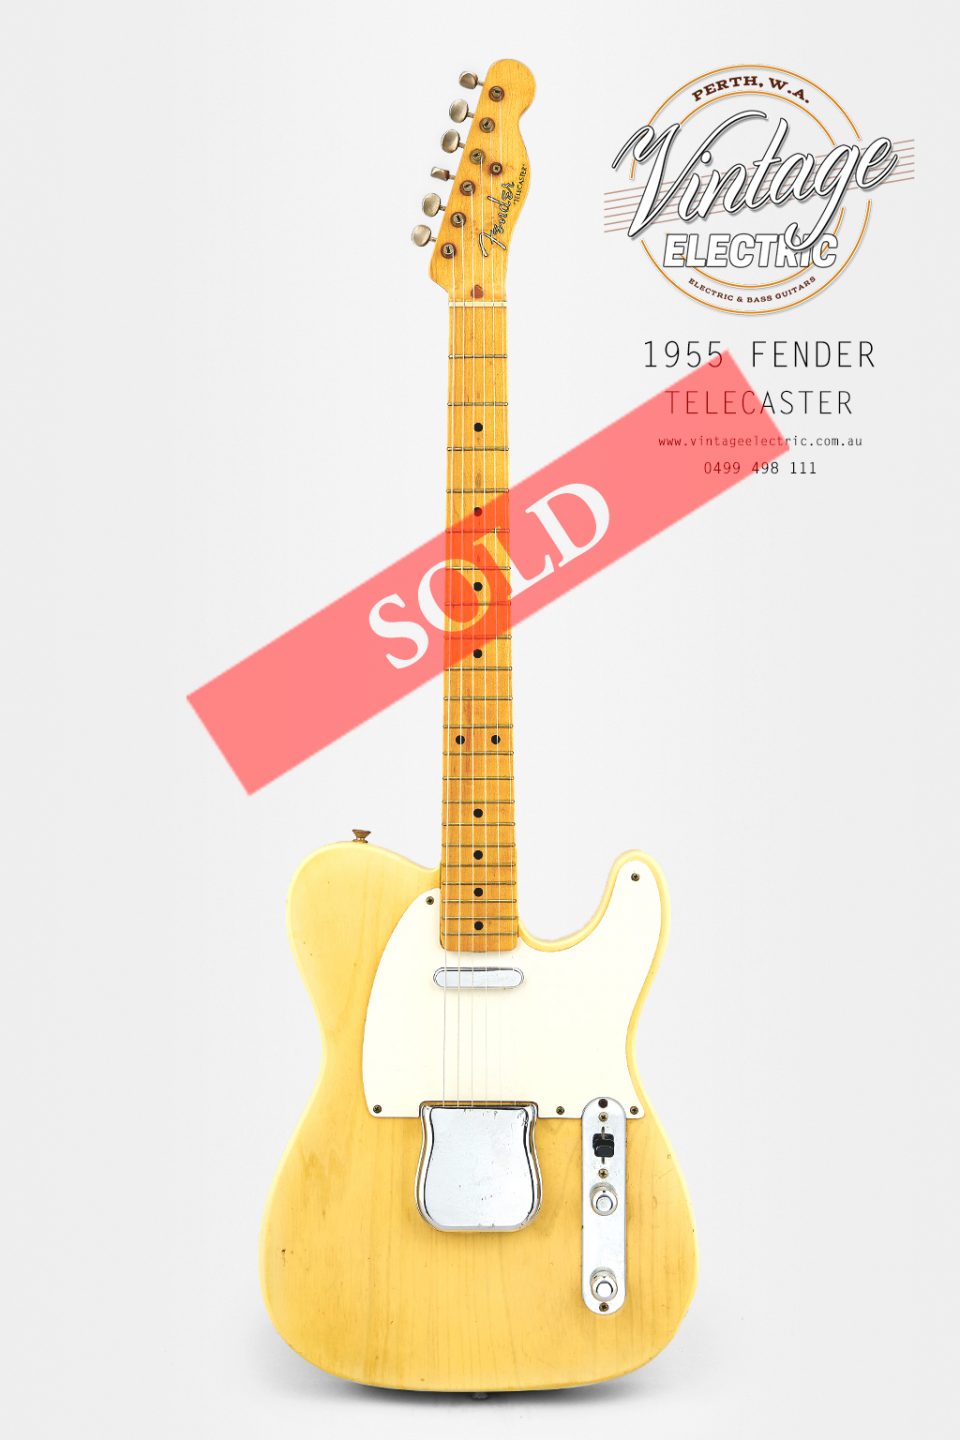 1955 Fender Telecaster SOLD